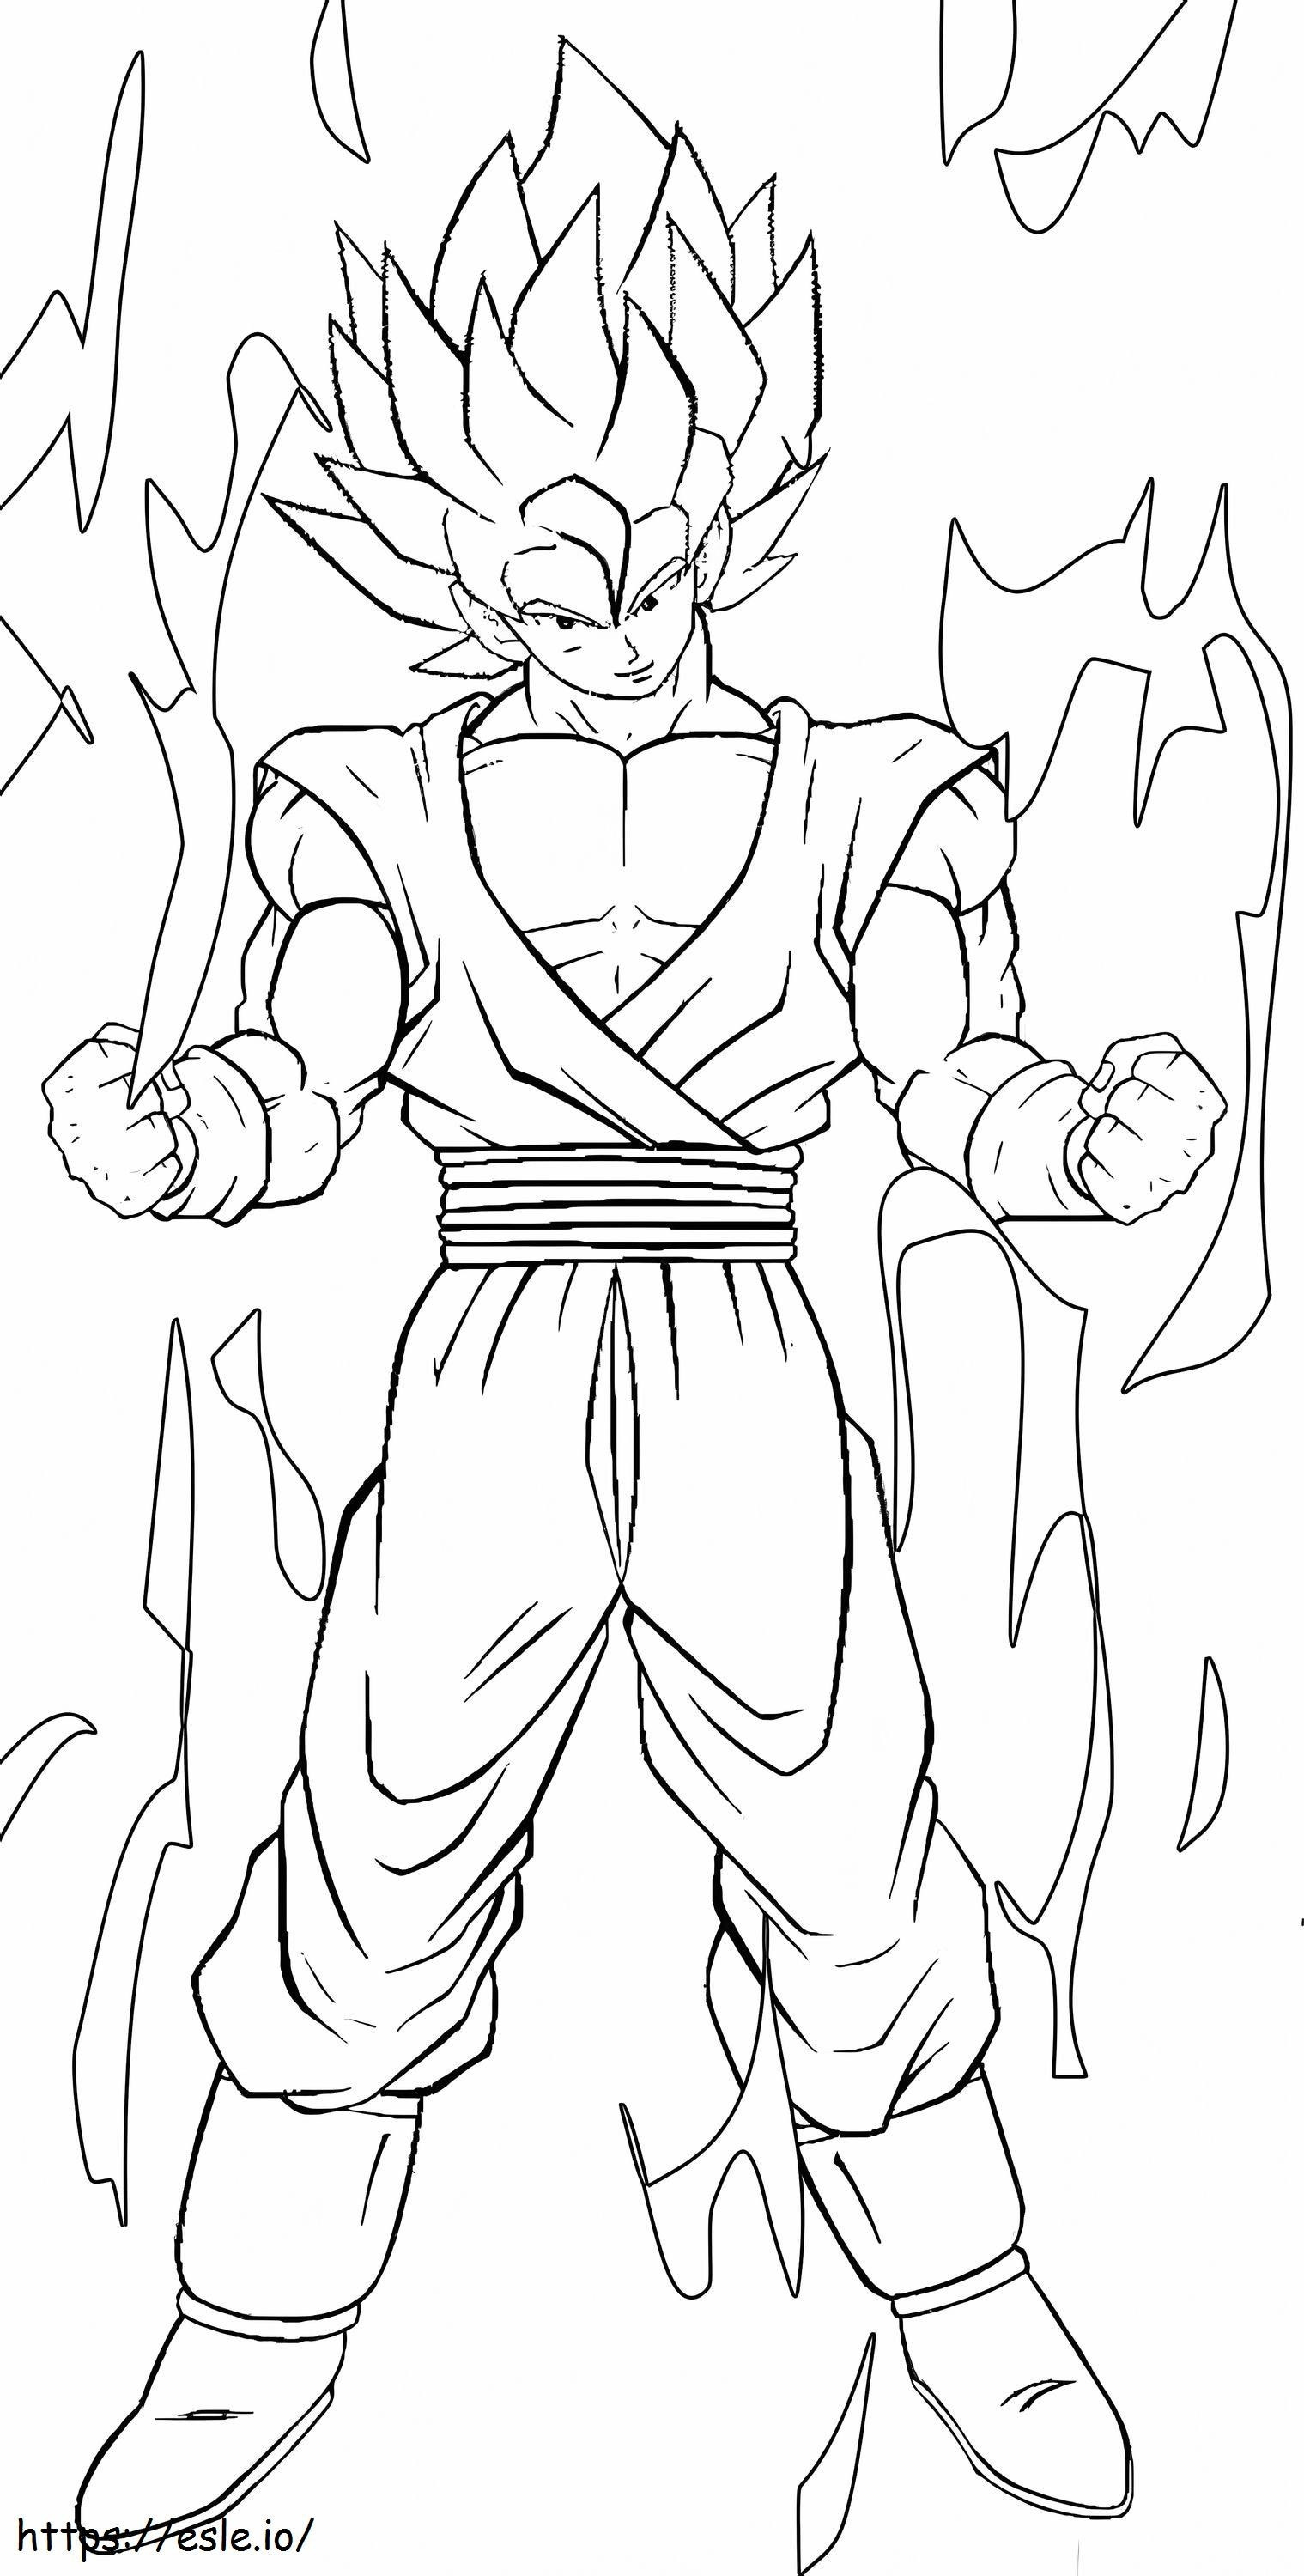 Desenhando Goku SSj1 para colorir